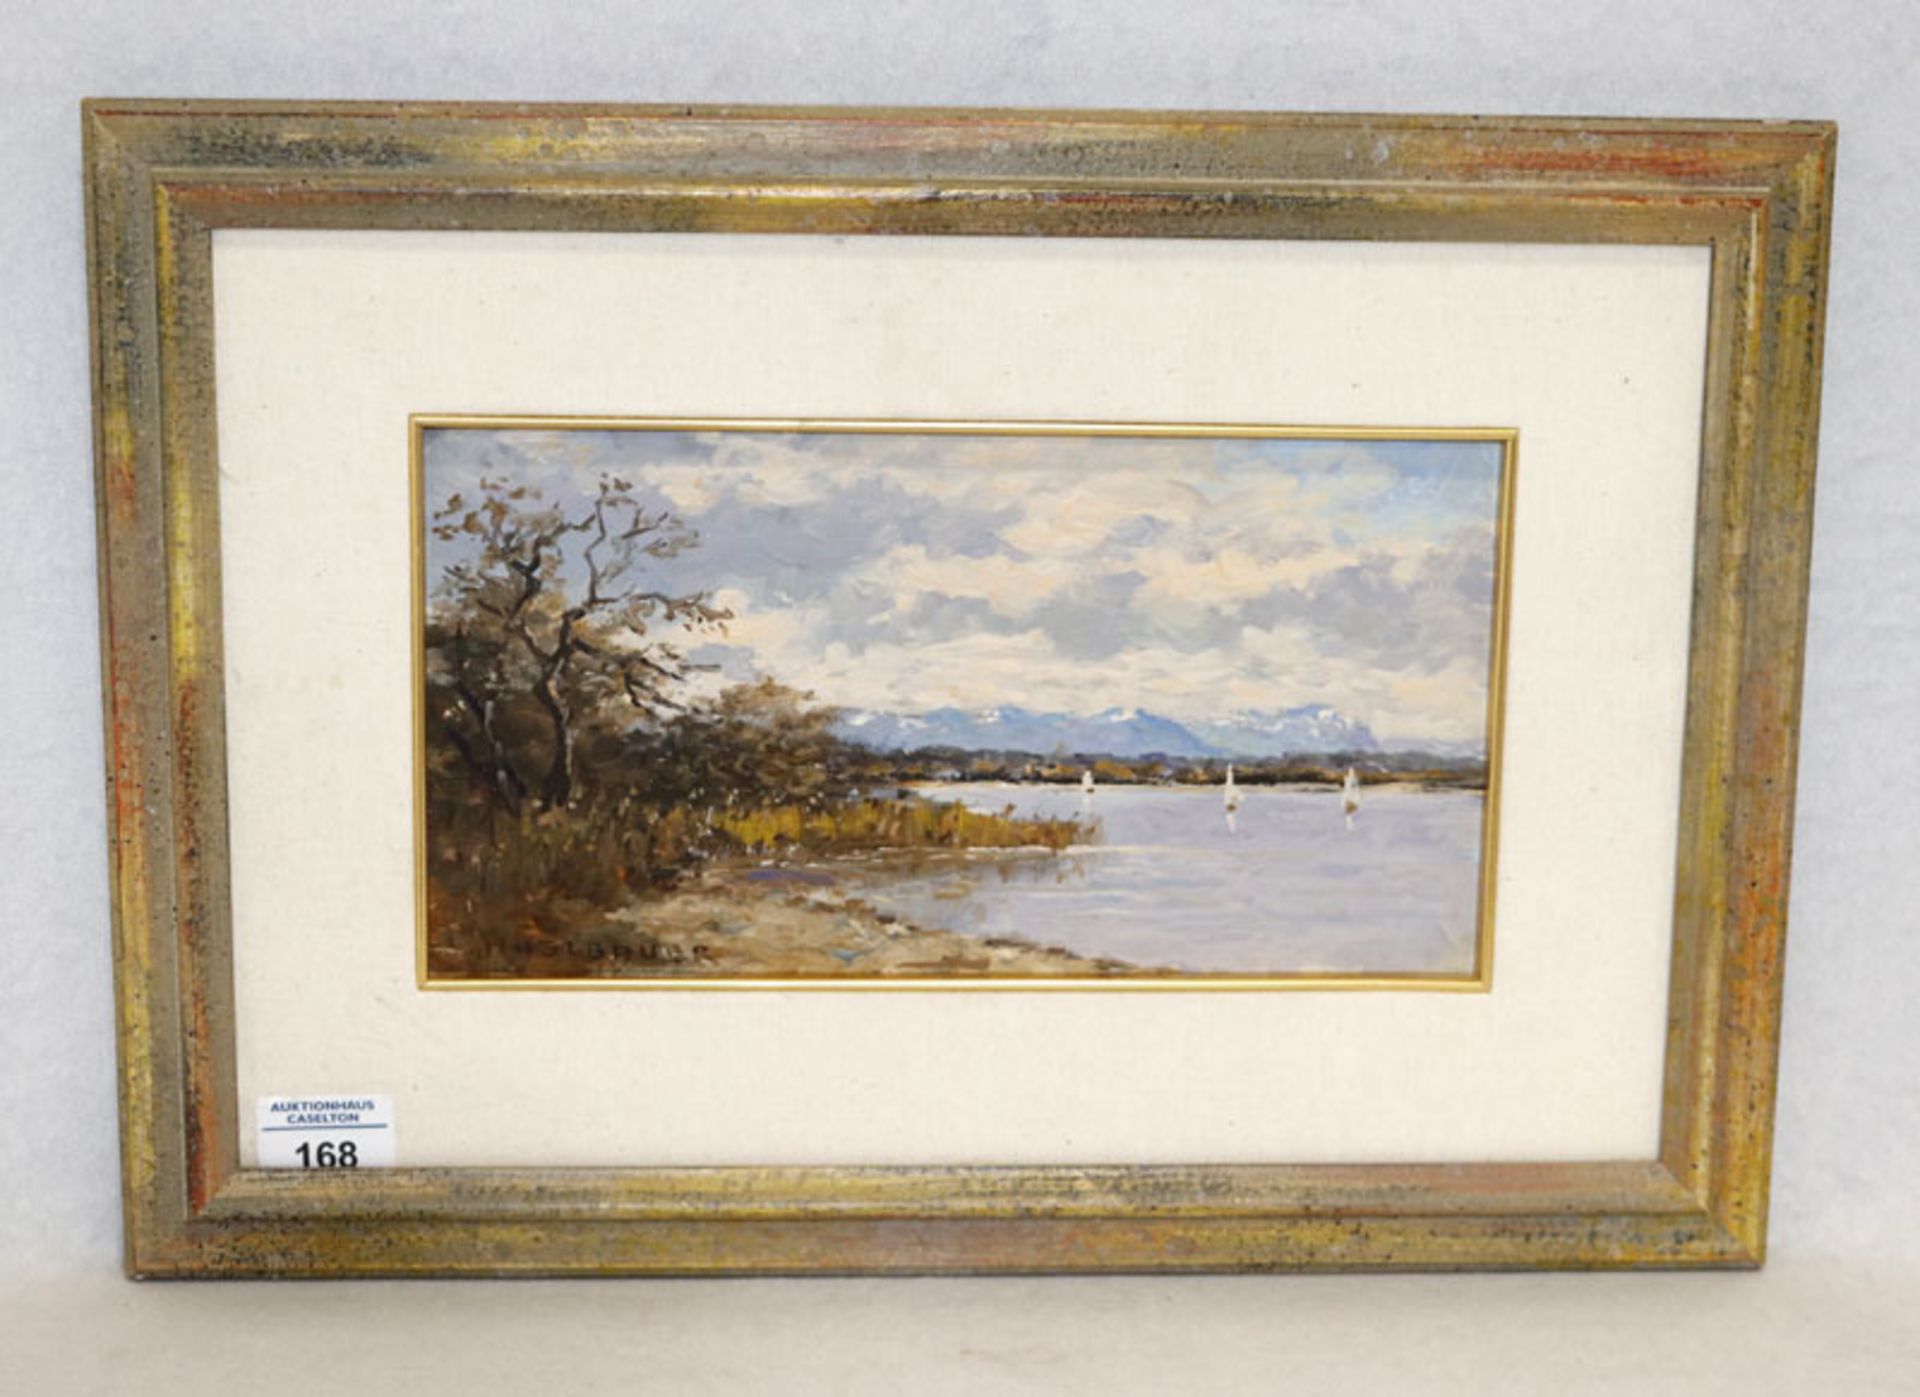 Gemälde ÖL/Malkarton 'Chiemsee-Szenerie mit Segelbooten', signiert Haslbauer, Paul, * 1919 München +